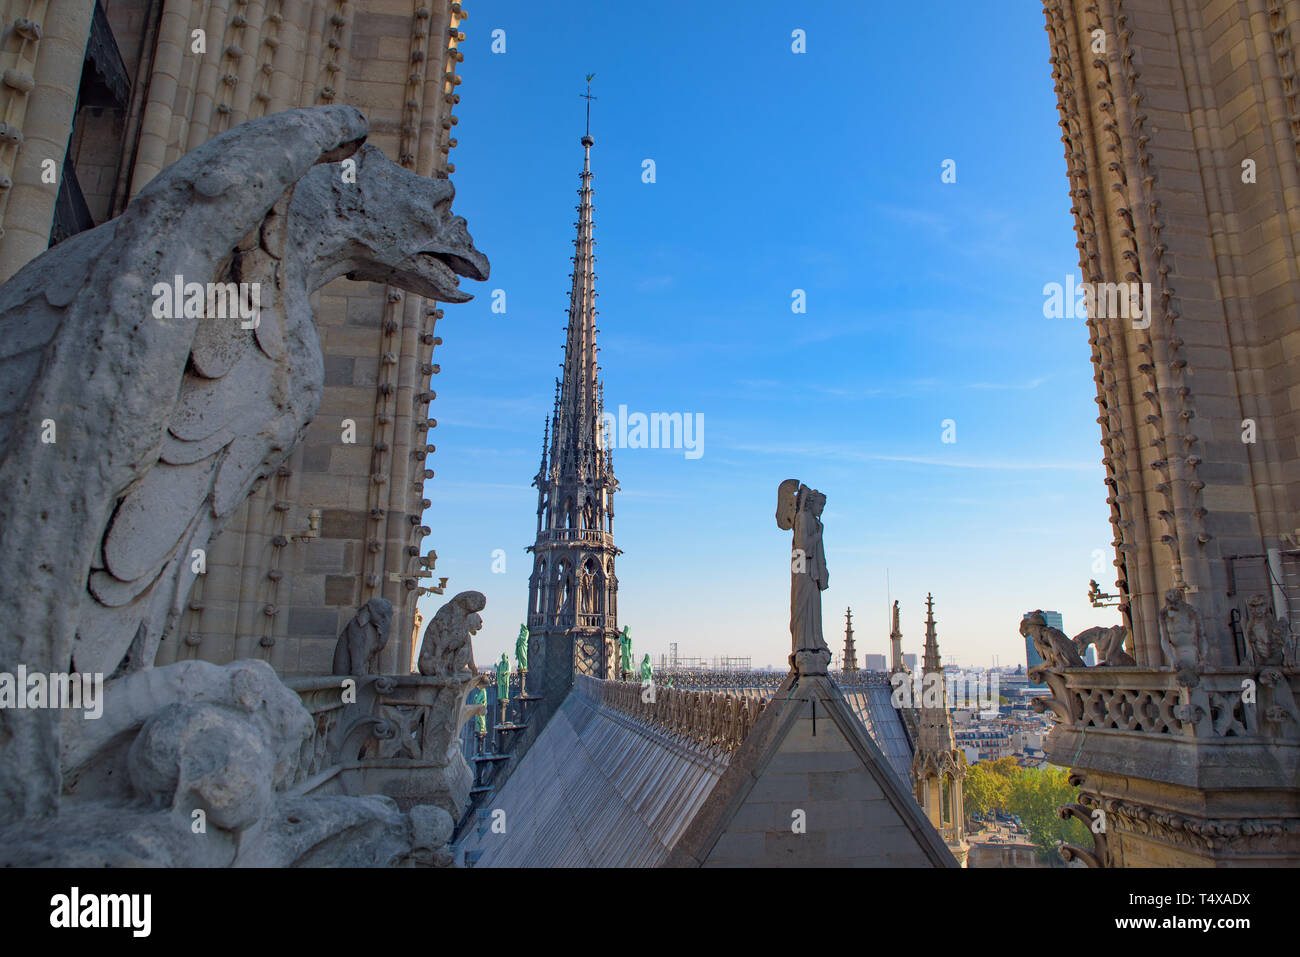 Vue sur les gargouilles et la tour centrale du haut de la Cathédrale Notre Dame de Paris, France Banque D'Images